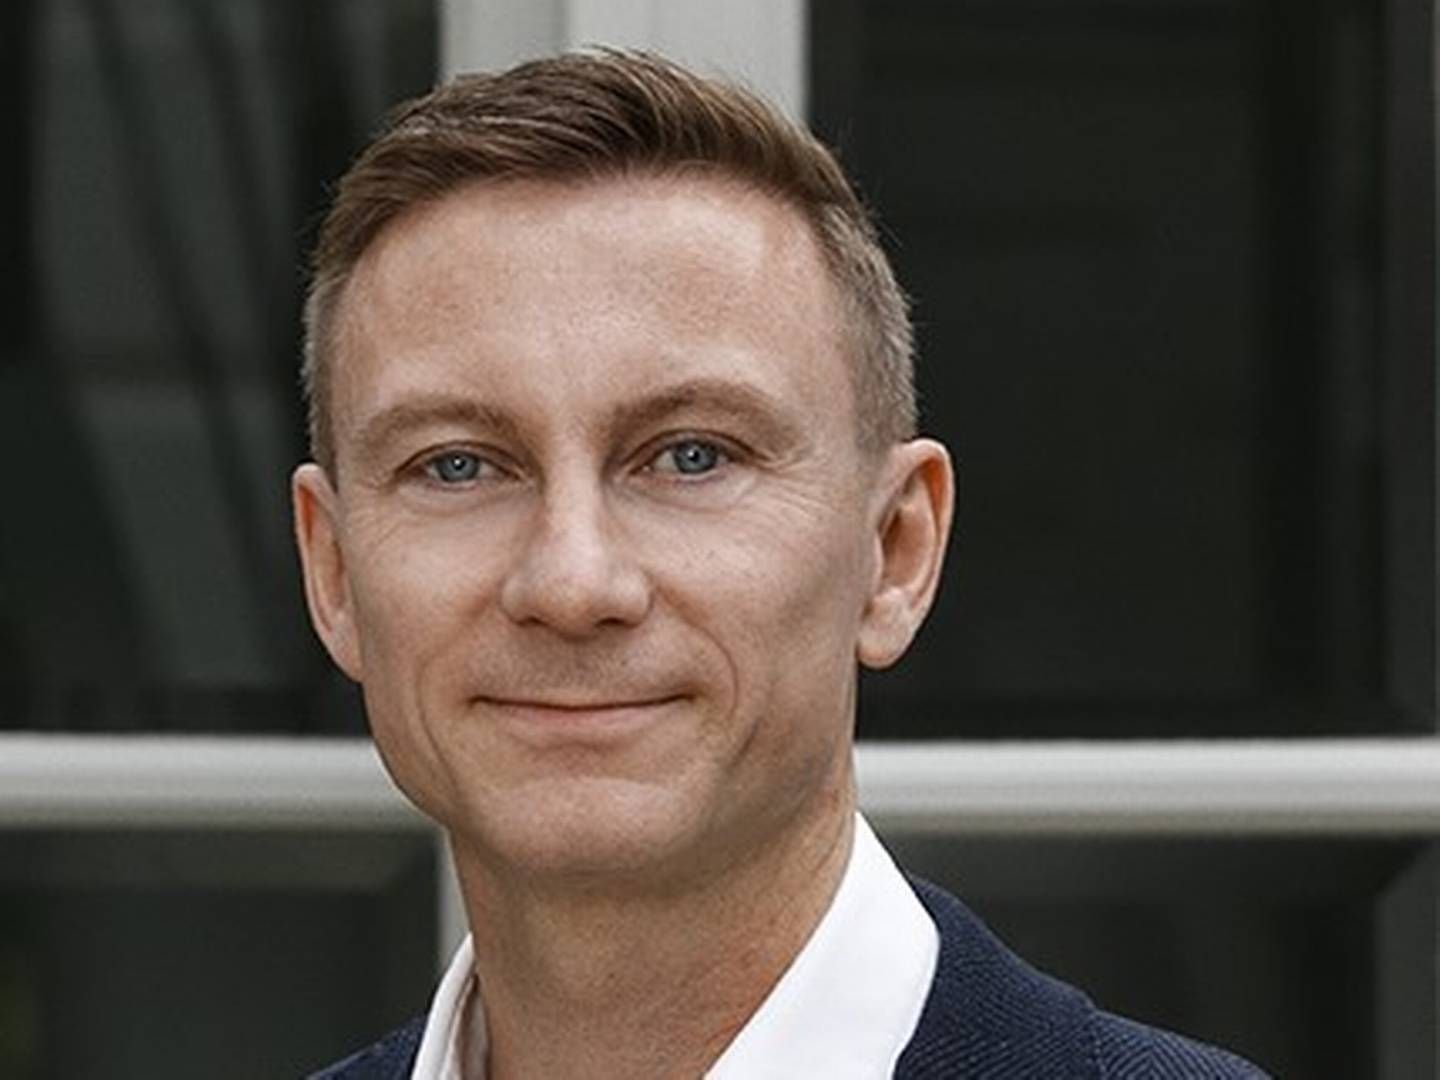 44-årige Peter Søgaard bliver efter knap 14 år i virksomheden nu adm. direktør for udviklerkoncernen Innovater: ”De tre nøgleord for mig er overblik, prioritering og eksekvering". | Photo: PR / Innovater